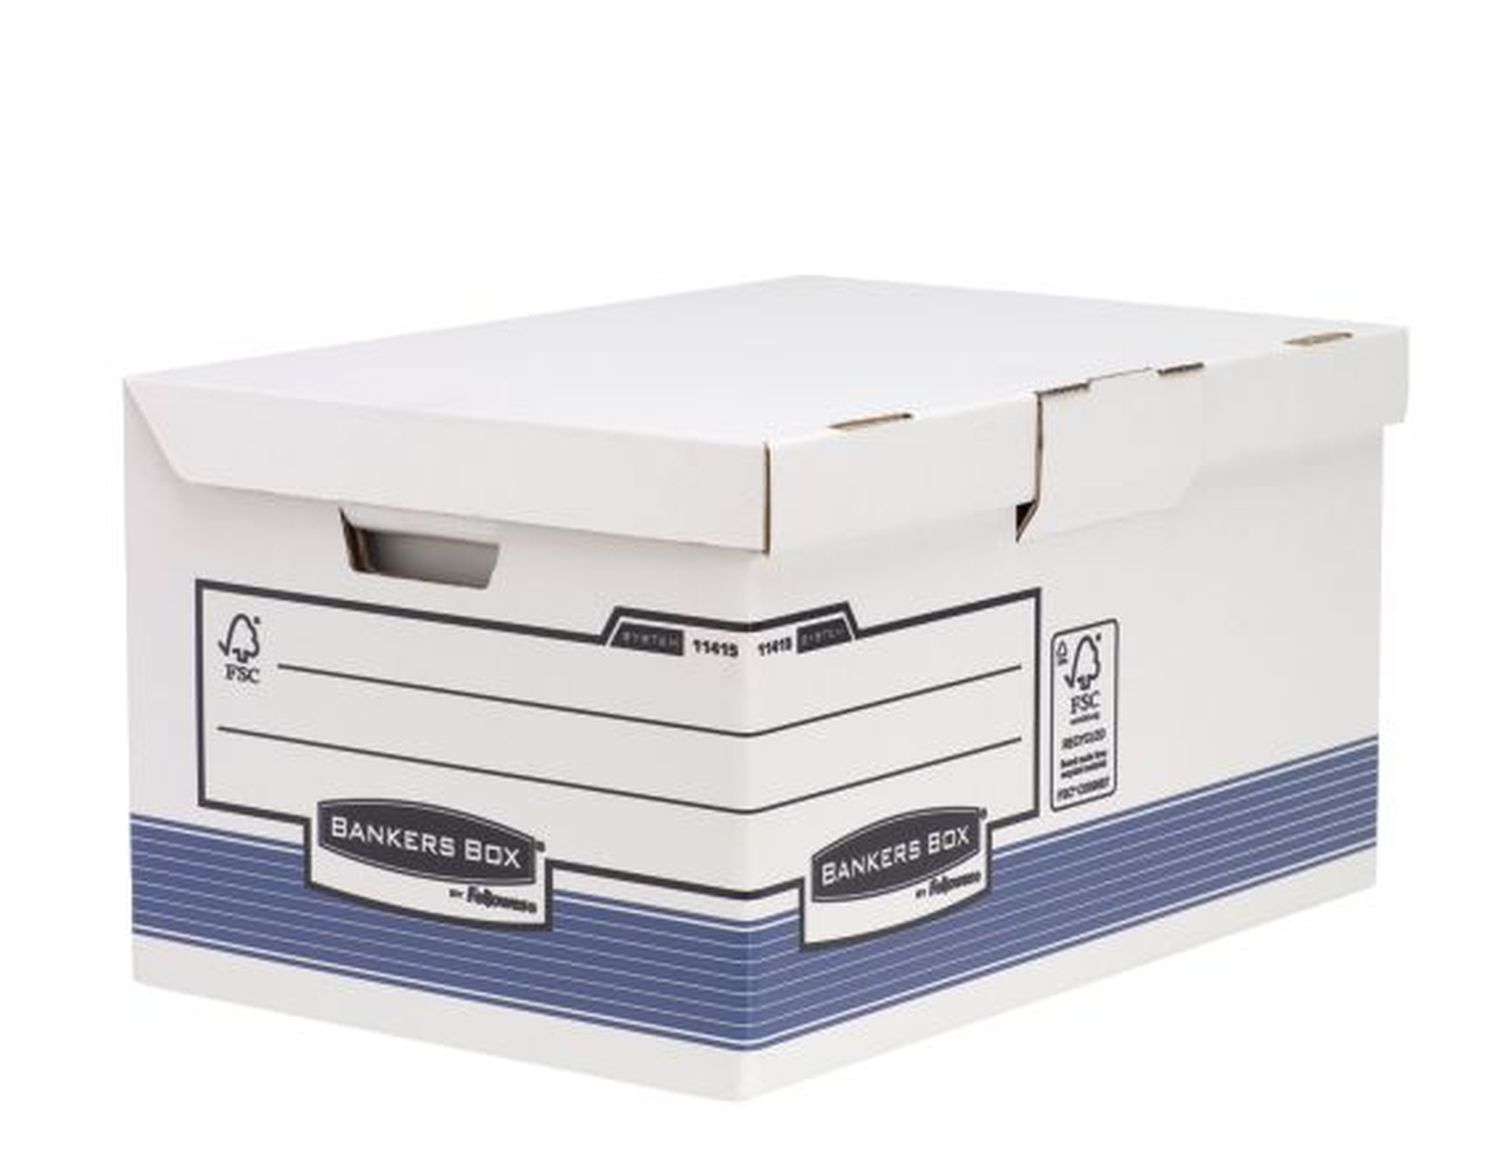 Archivcontainer Bankers Box® System 1141501 mit Klappdeckel für Ordner und Archivschachteln, weiß/blau